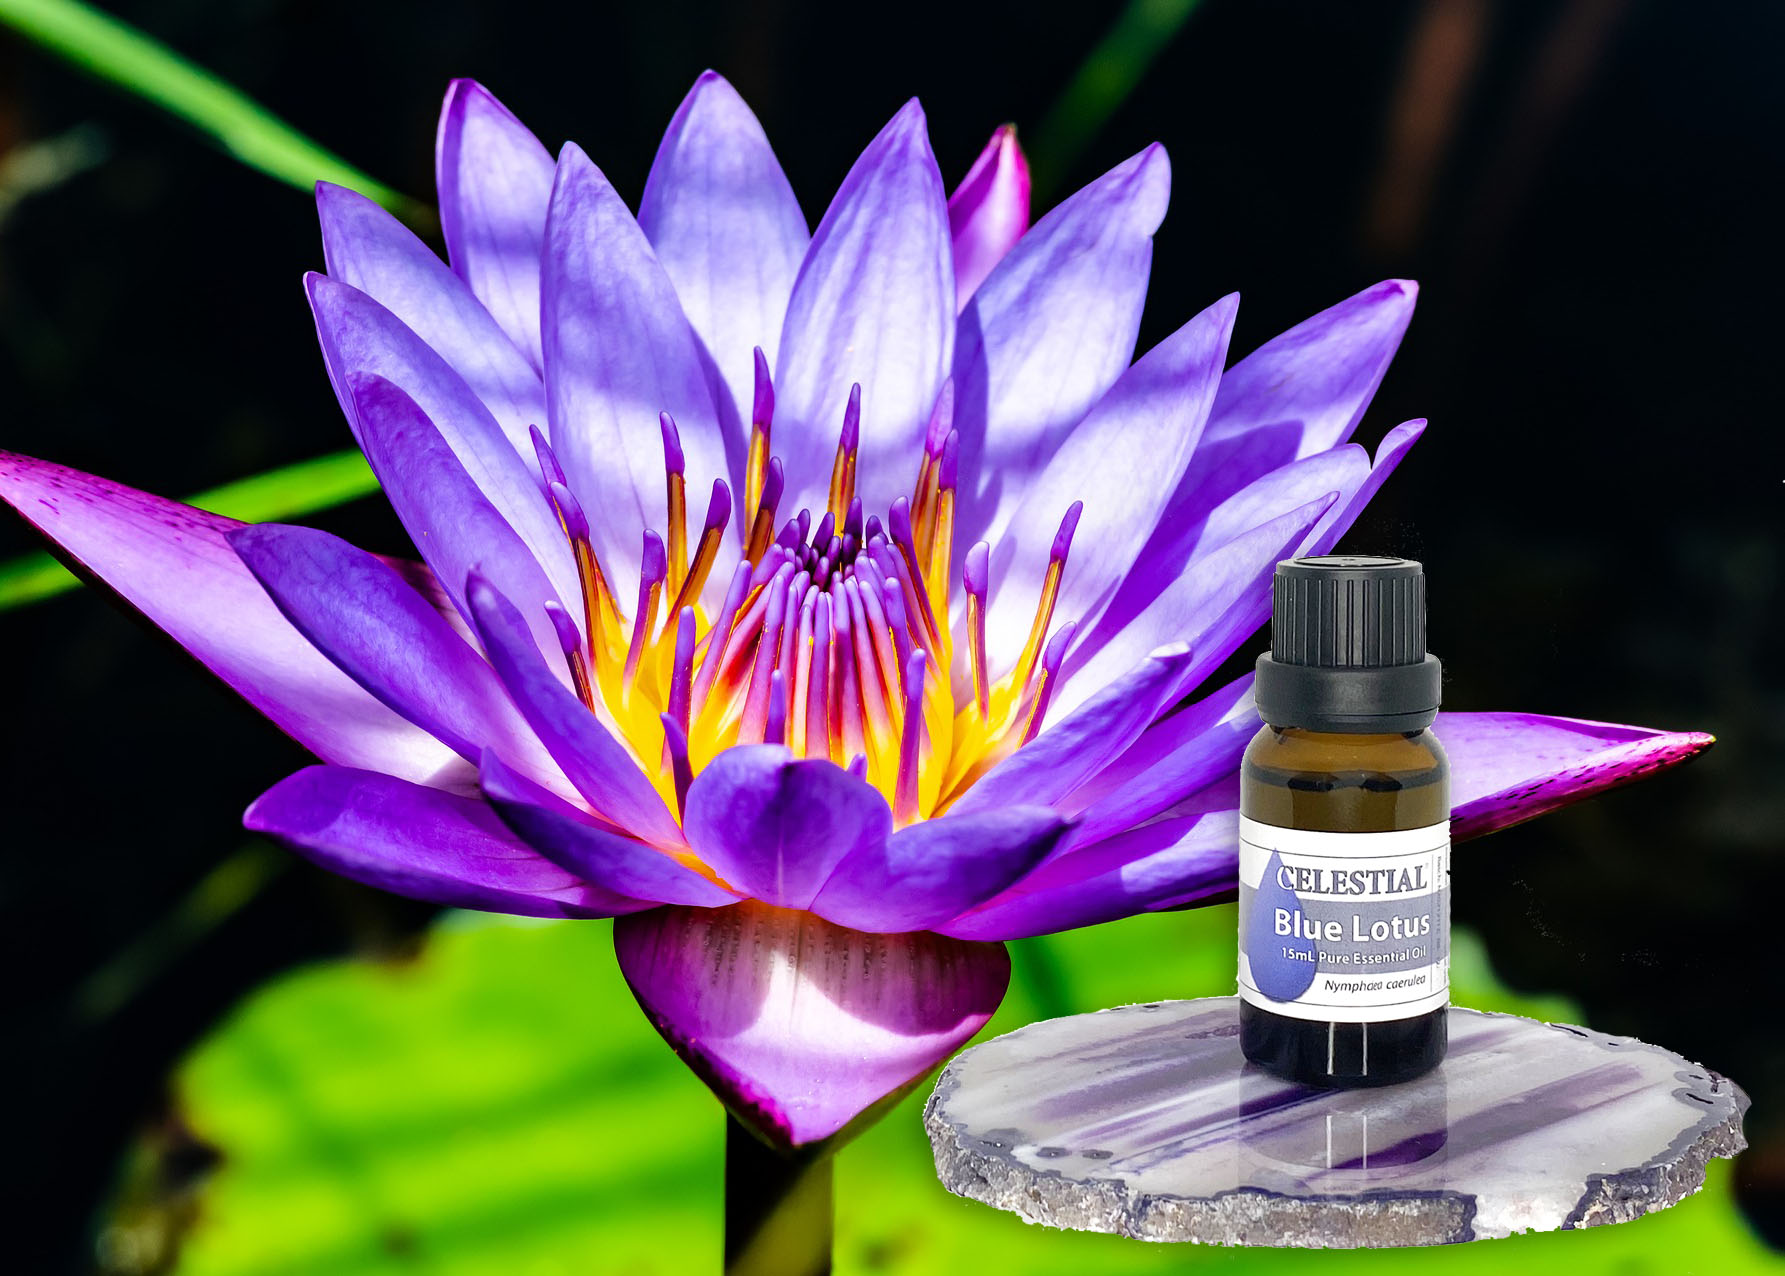 Lotus essential oil